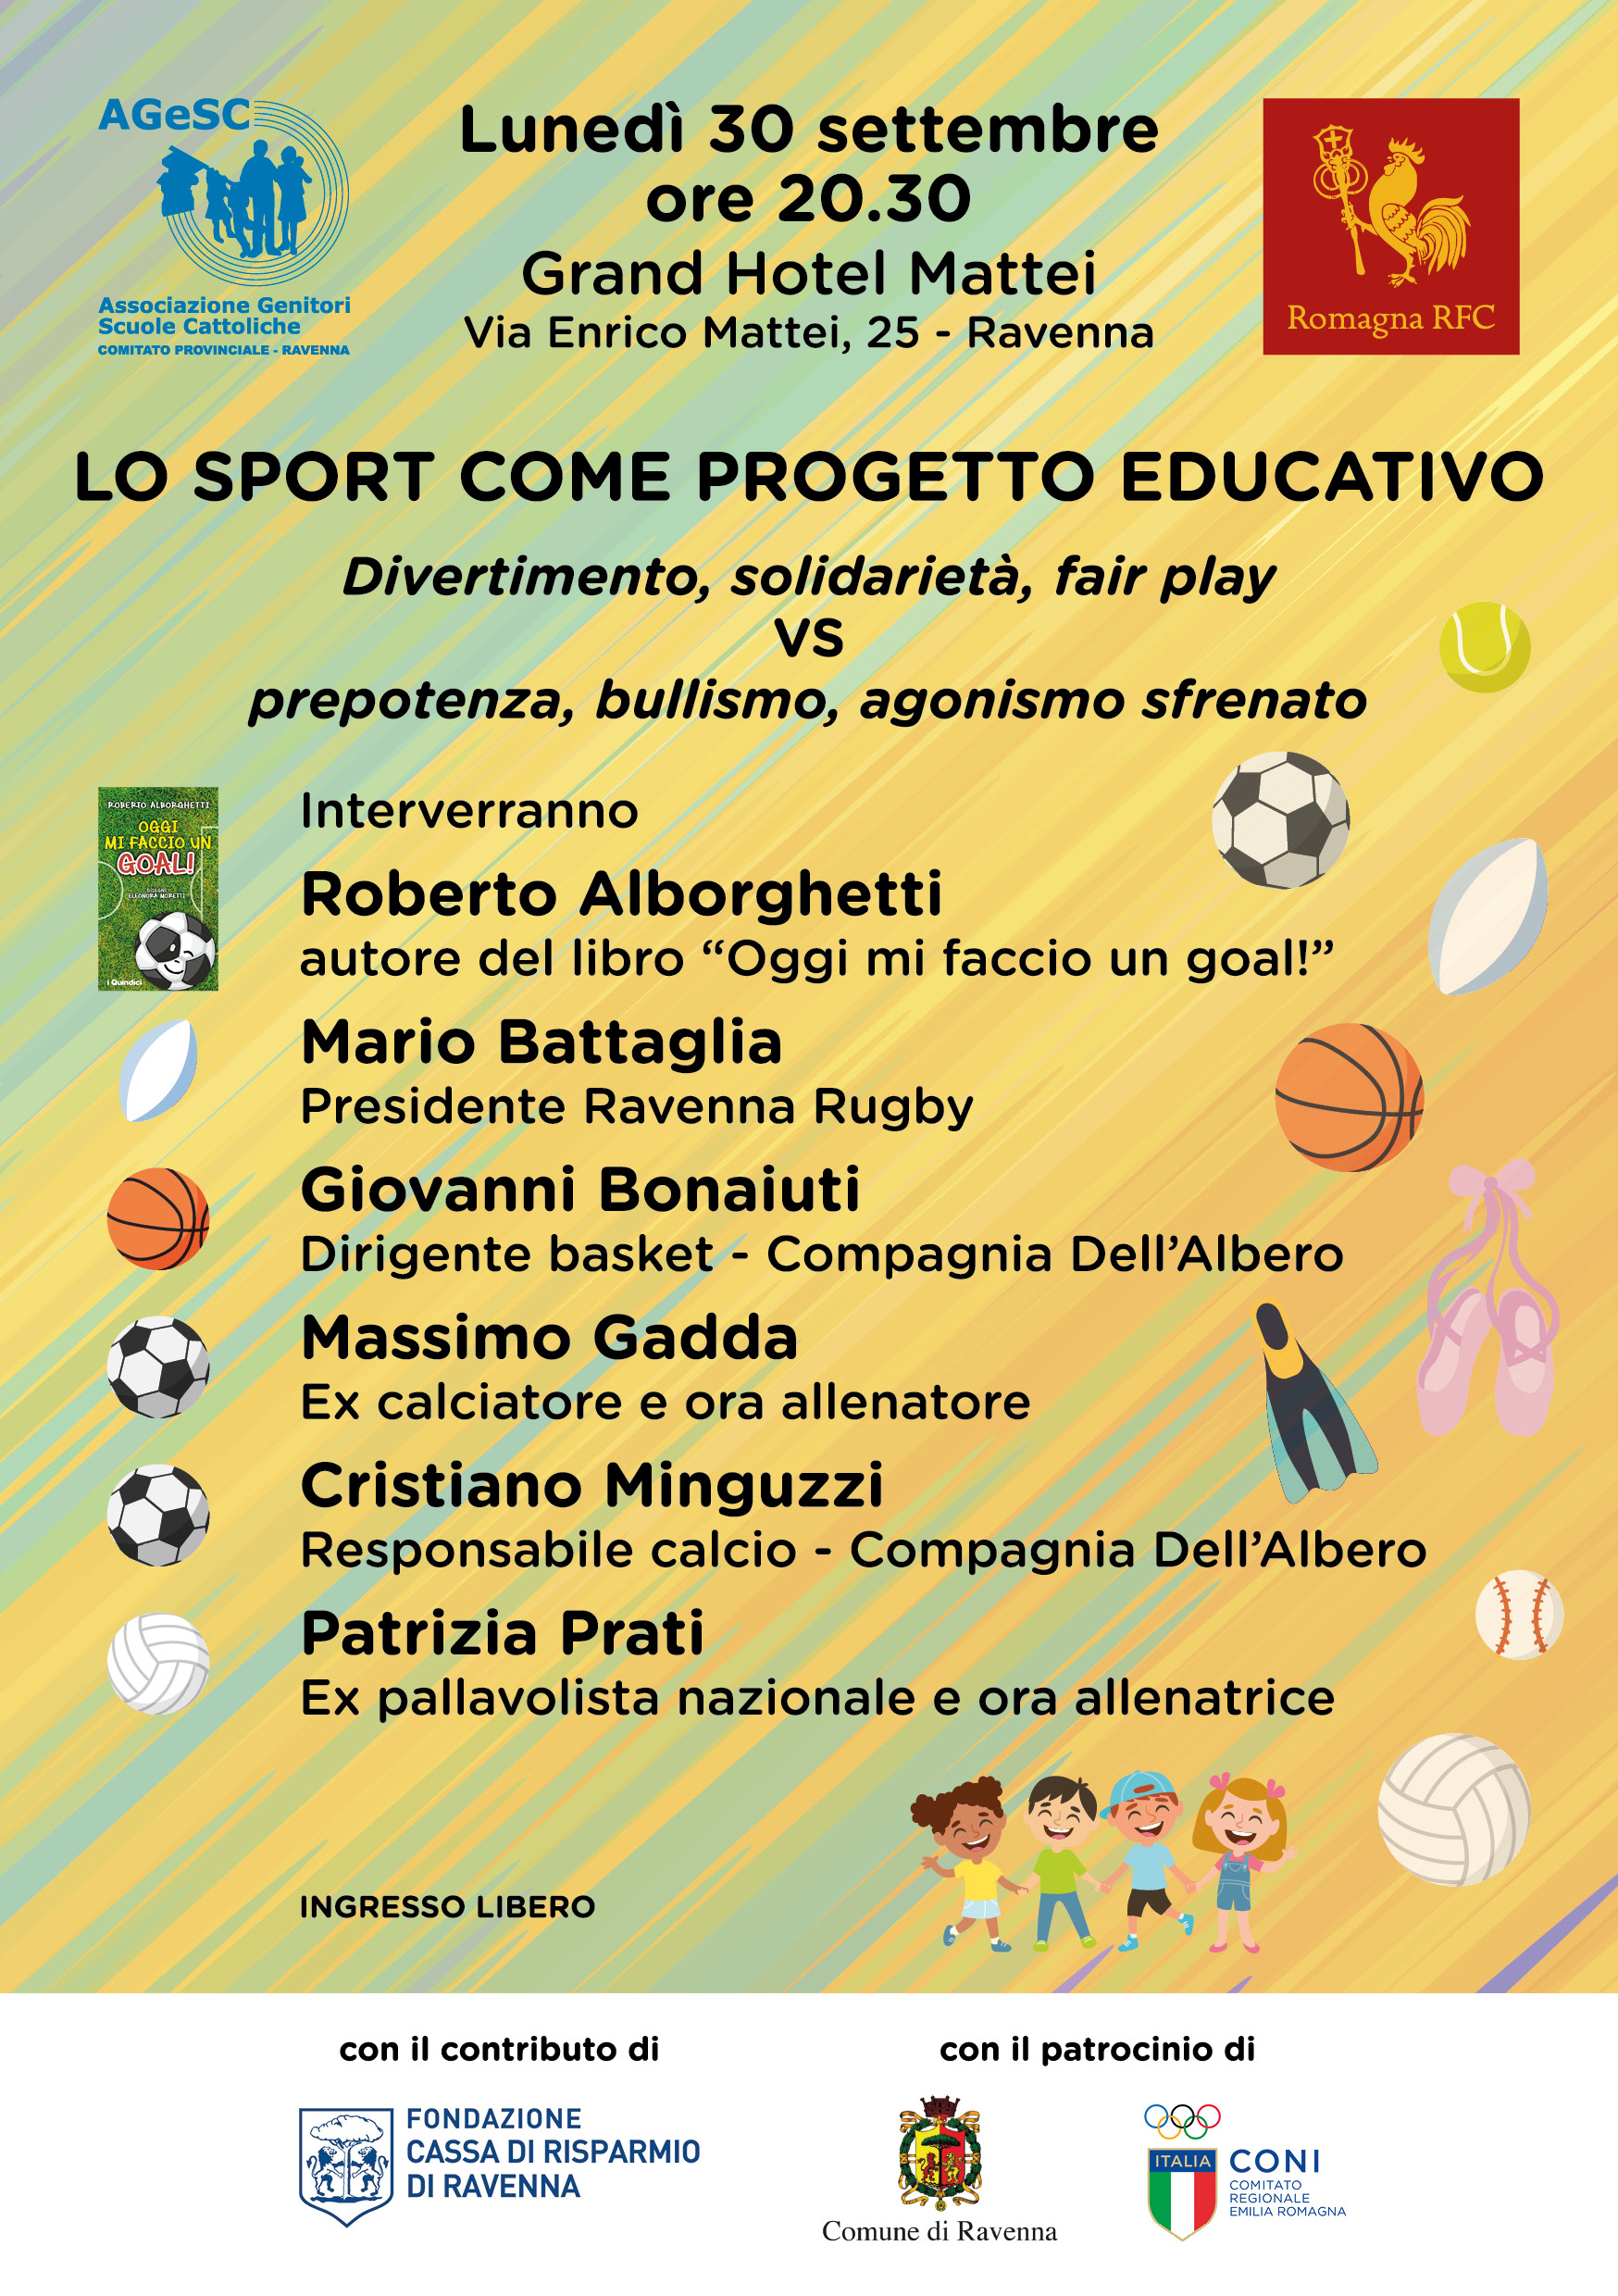 Lo sport come progetto educativo: 30 settembre incontro al Grand Hotel Mattei